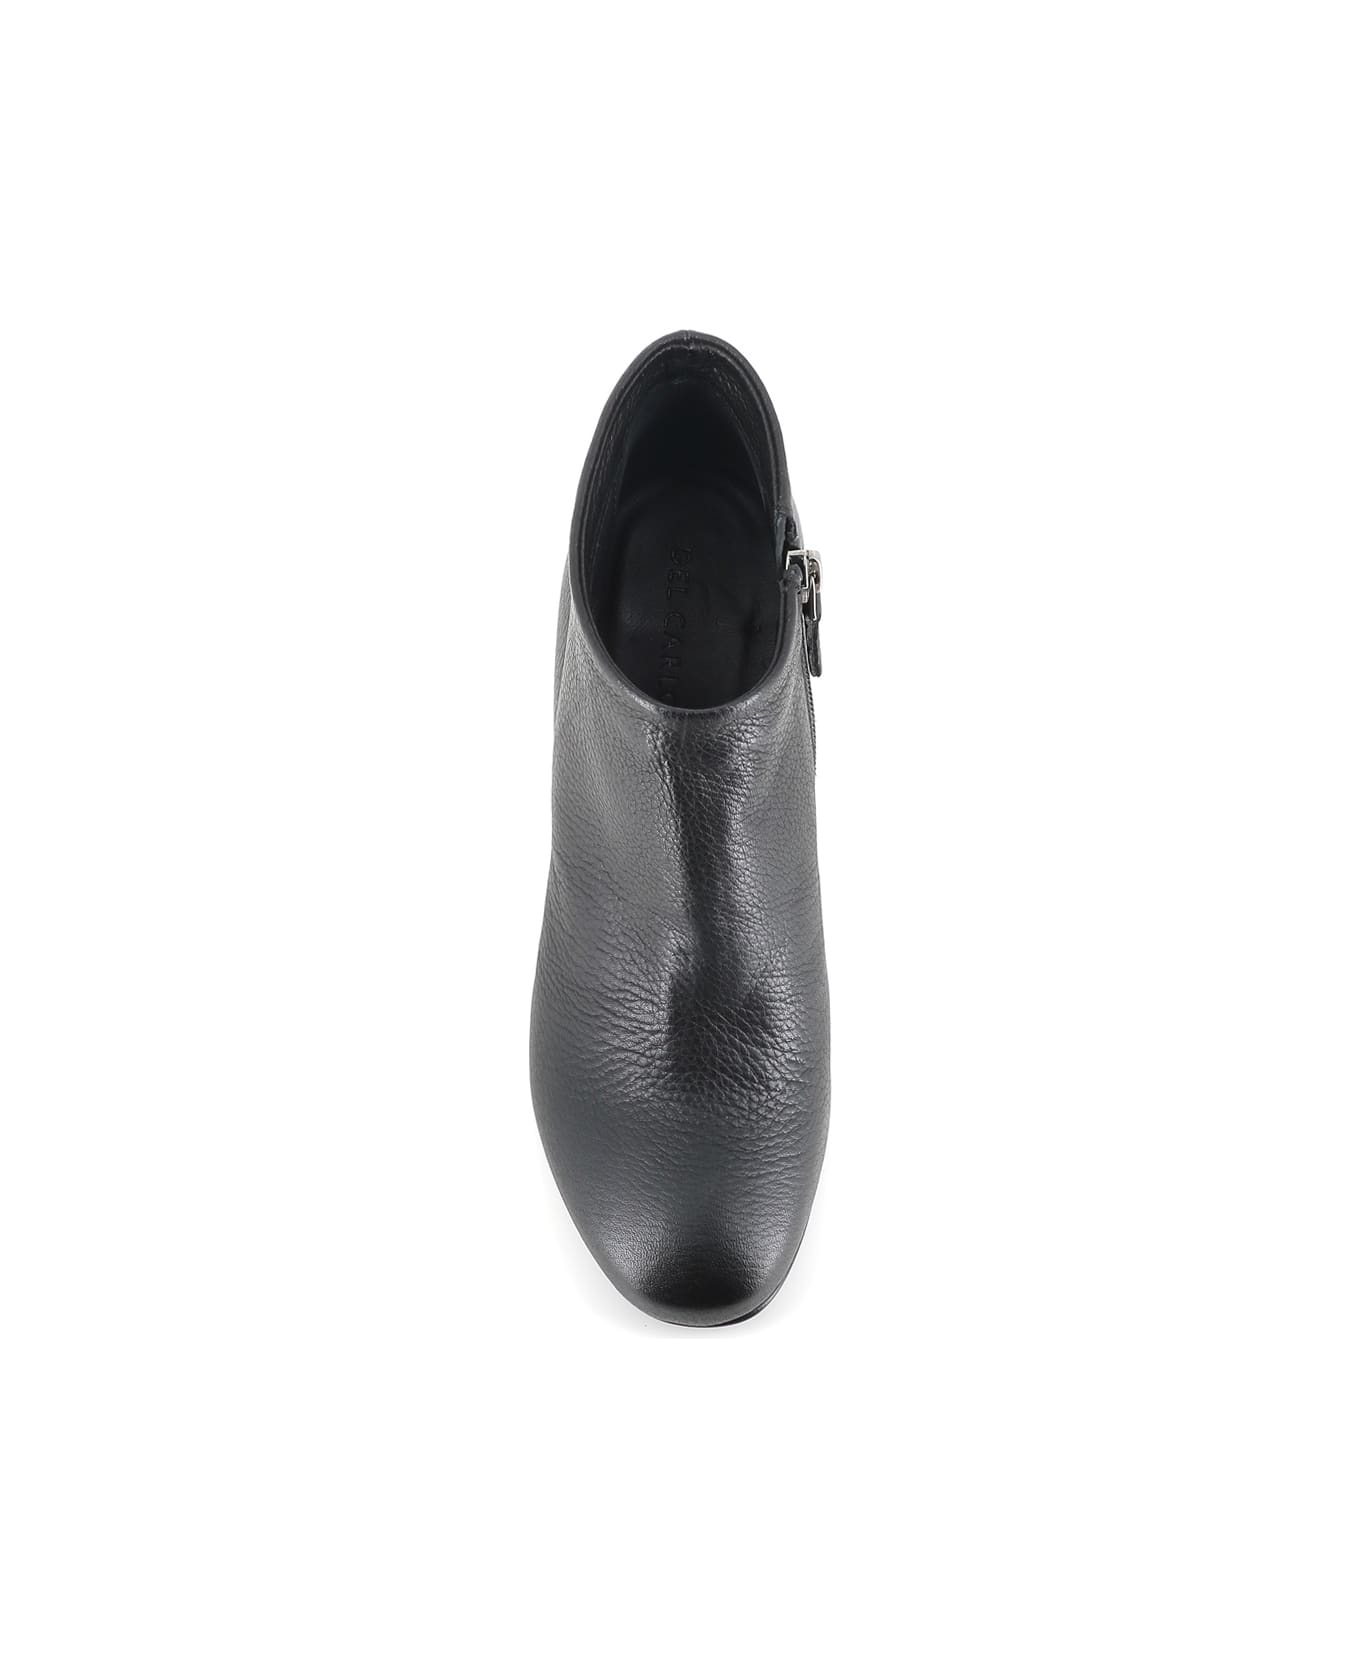 Del Carlo Ankle-boot 11642 - Black